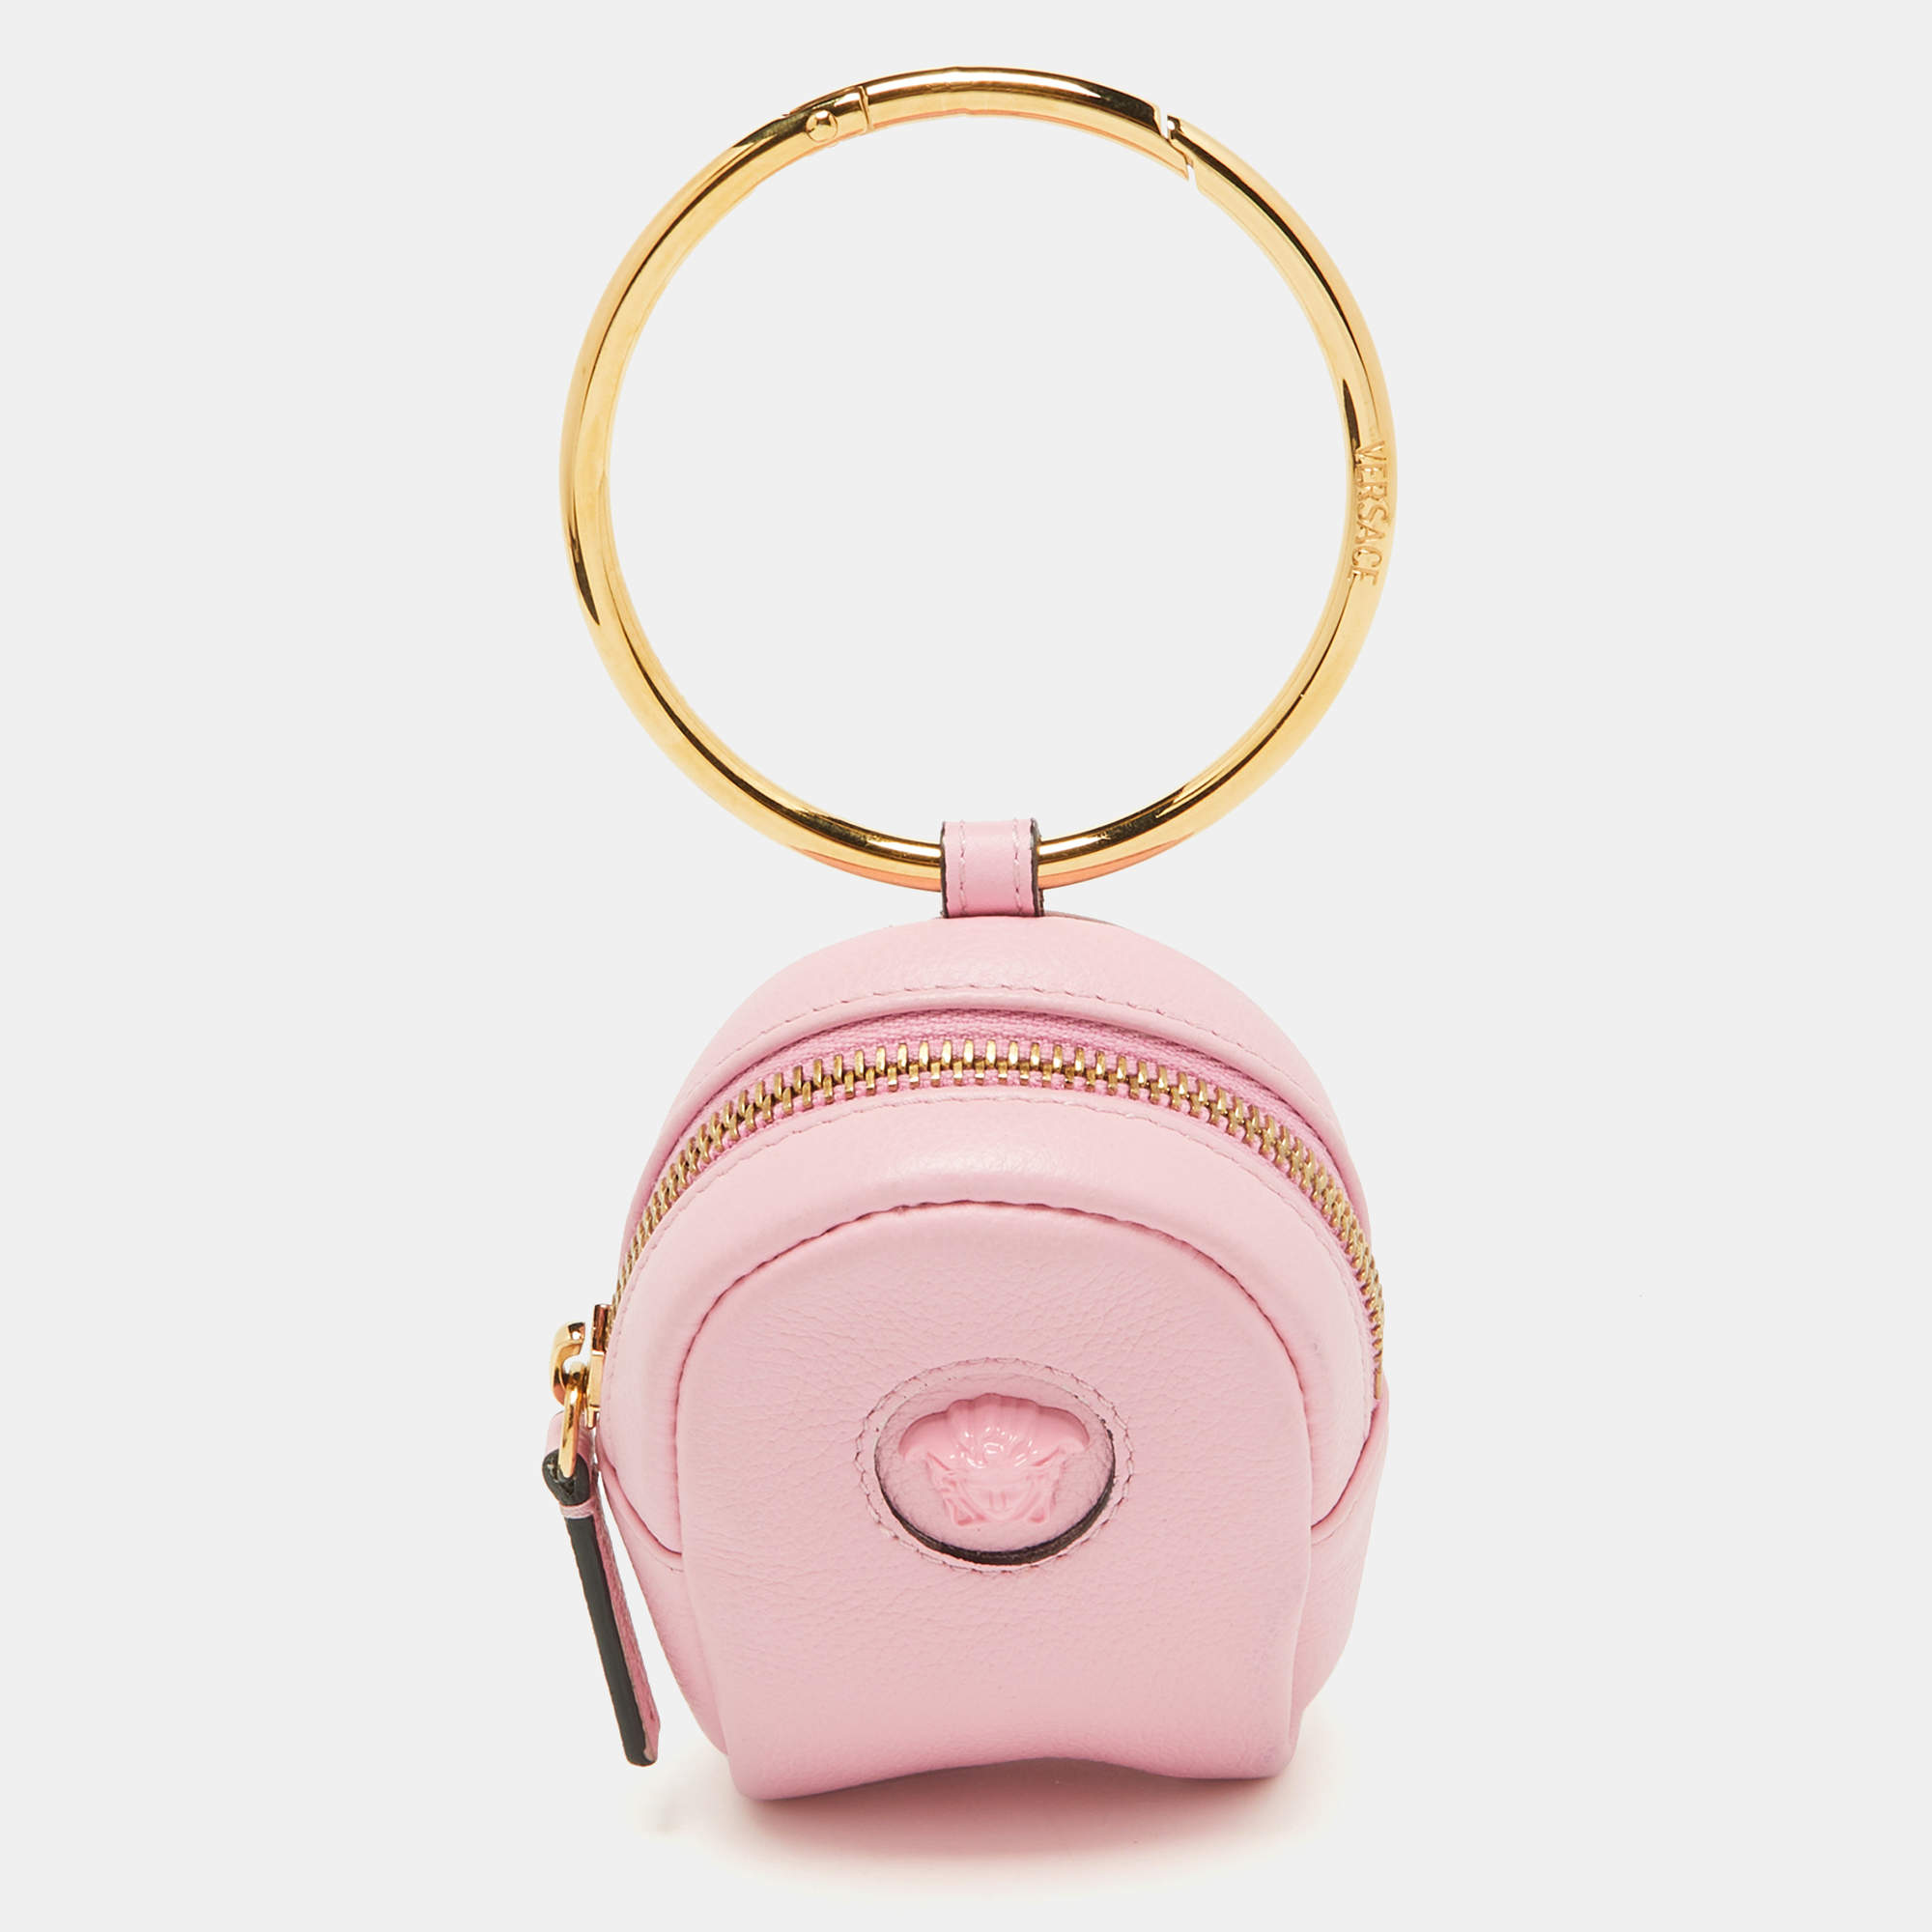 VERSACE handbag + shoulder strap 73VA4BF2 pink versace print - Soledad